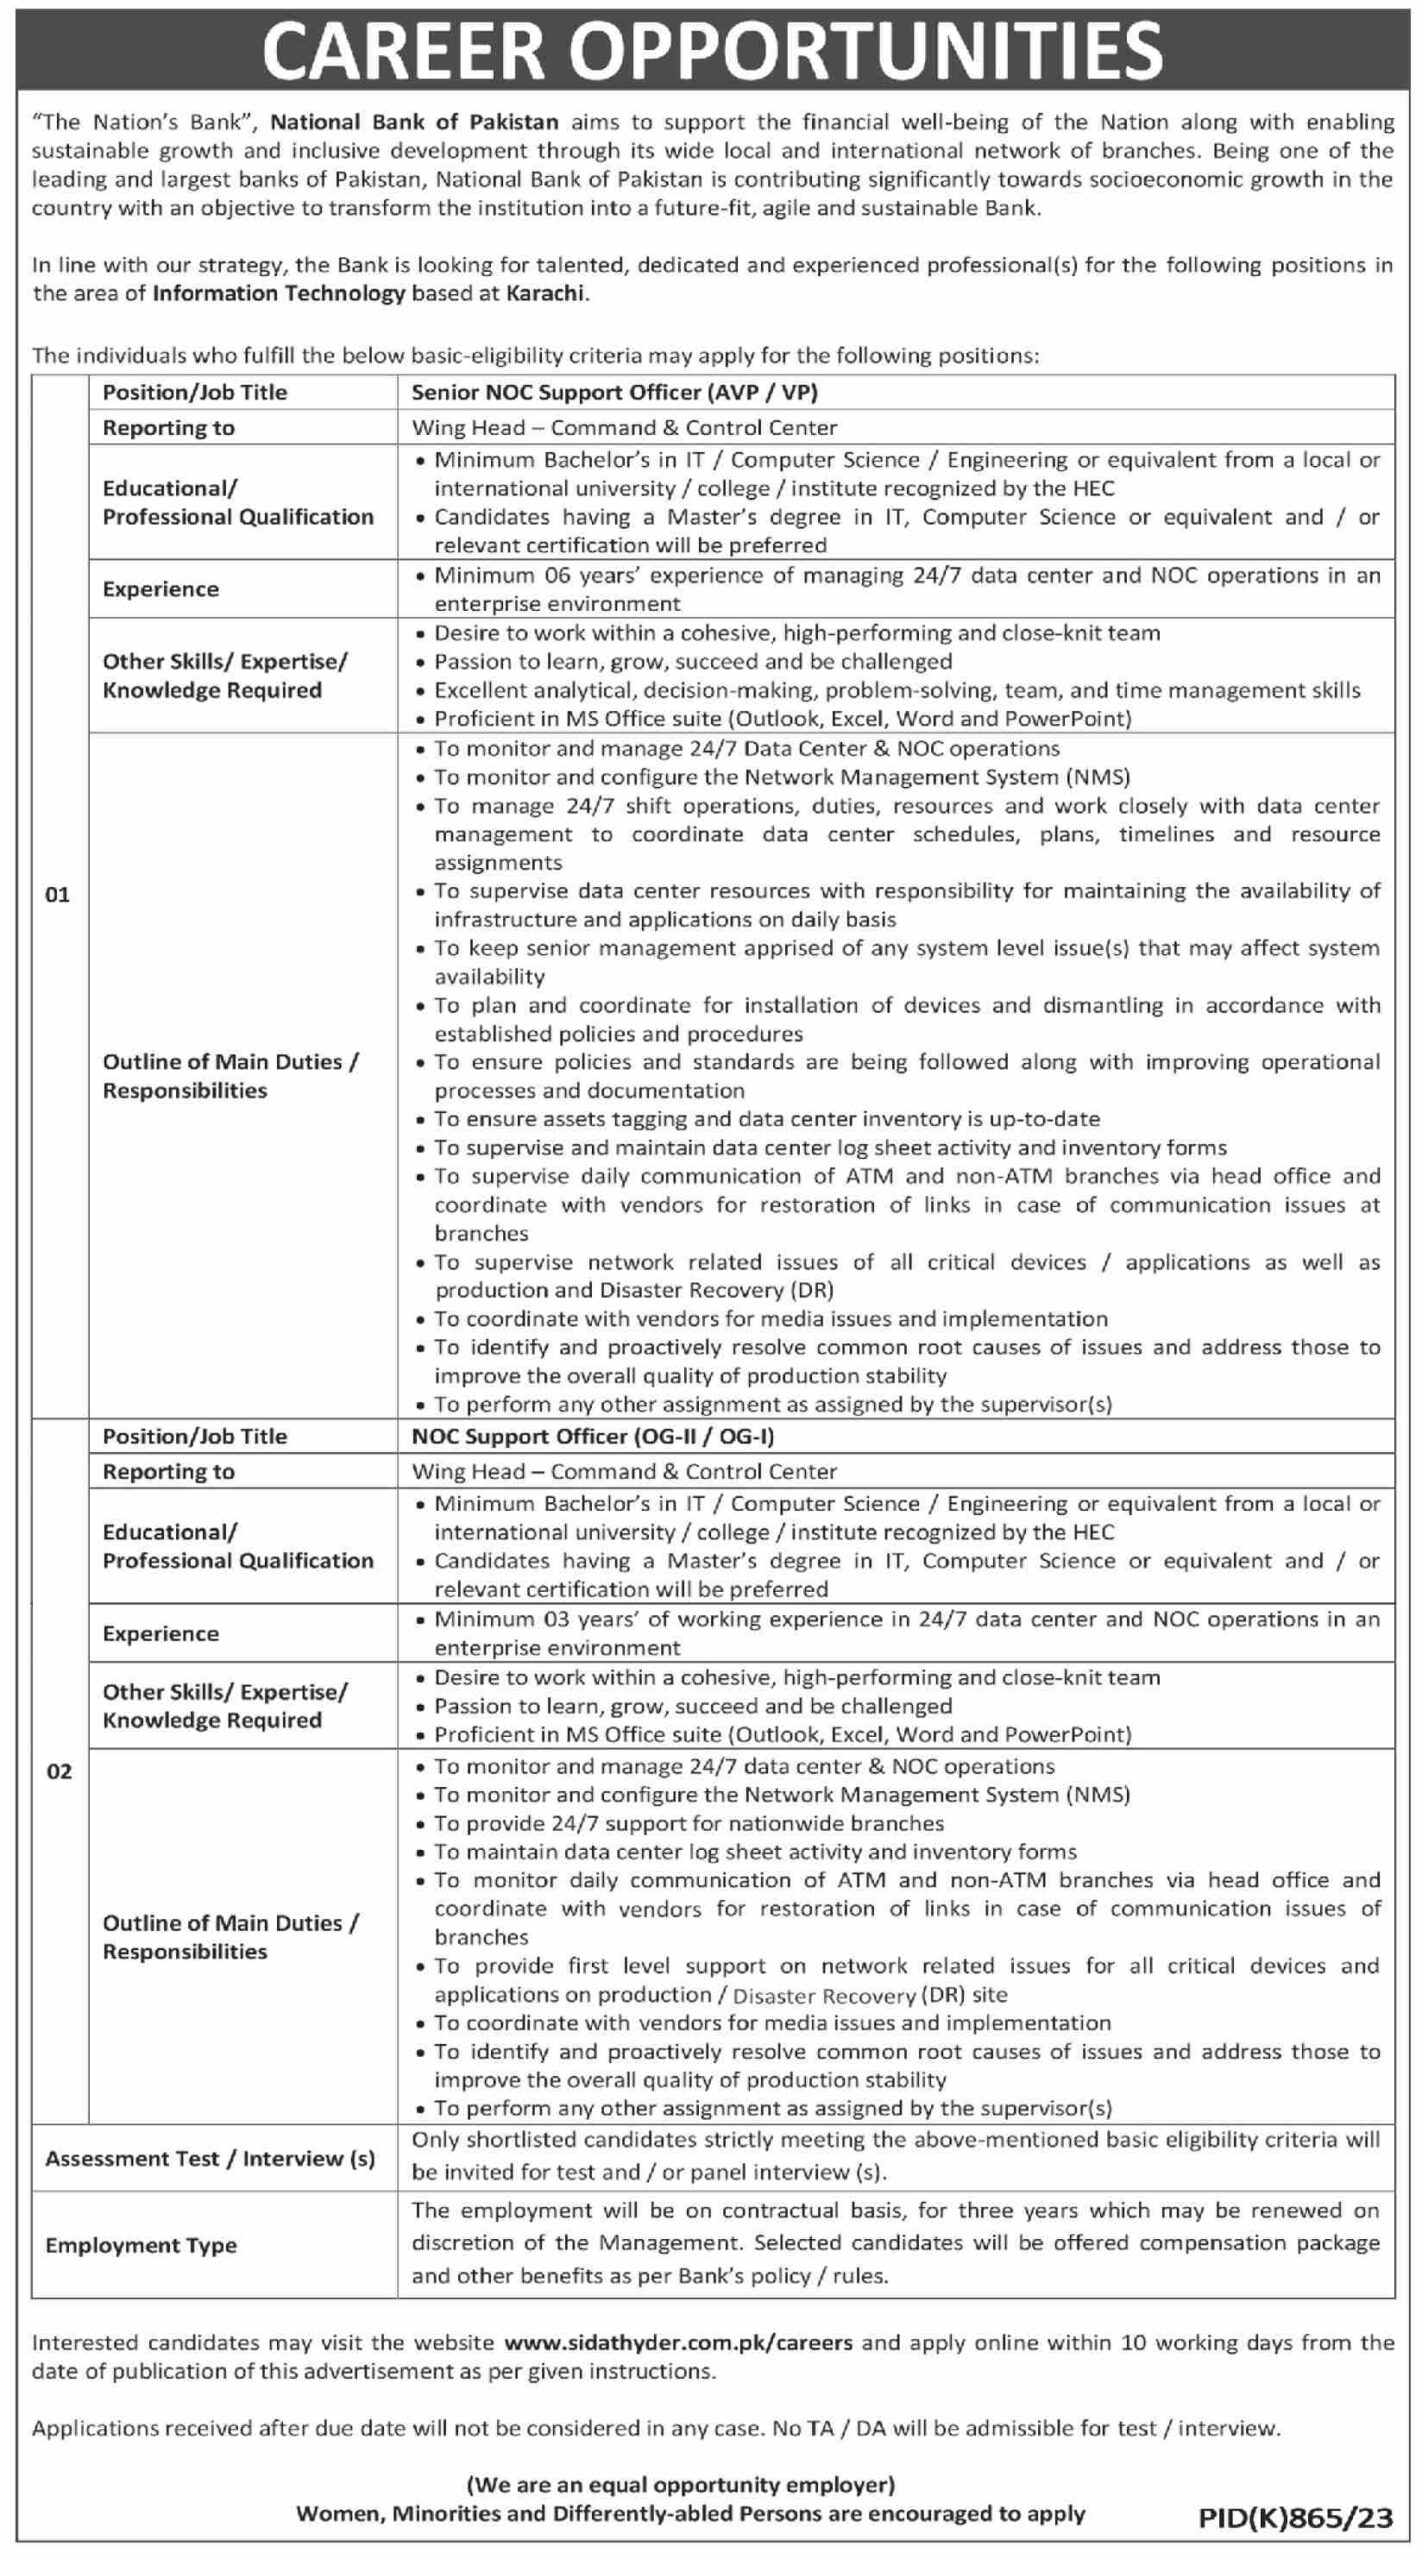 National Bank of Pakistan (NBP) Jobs 2023